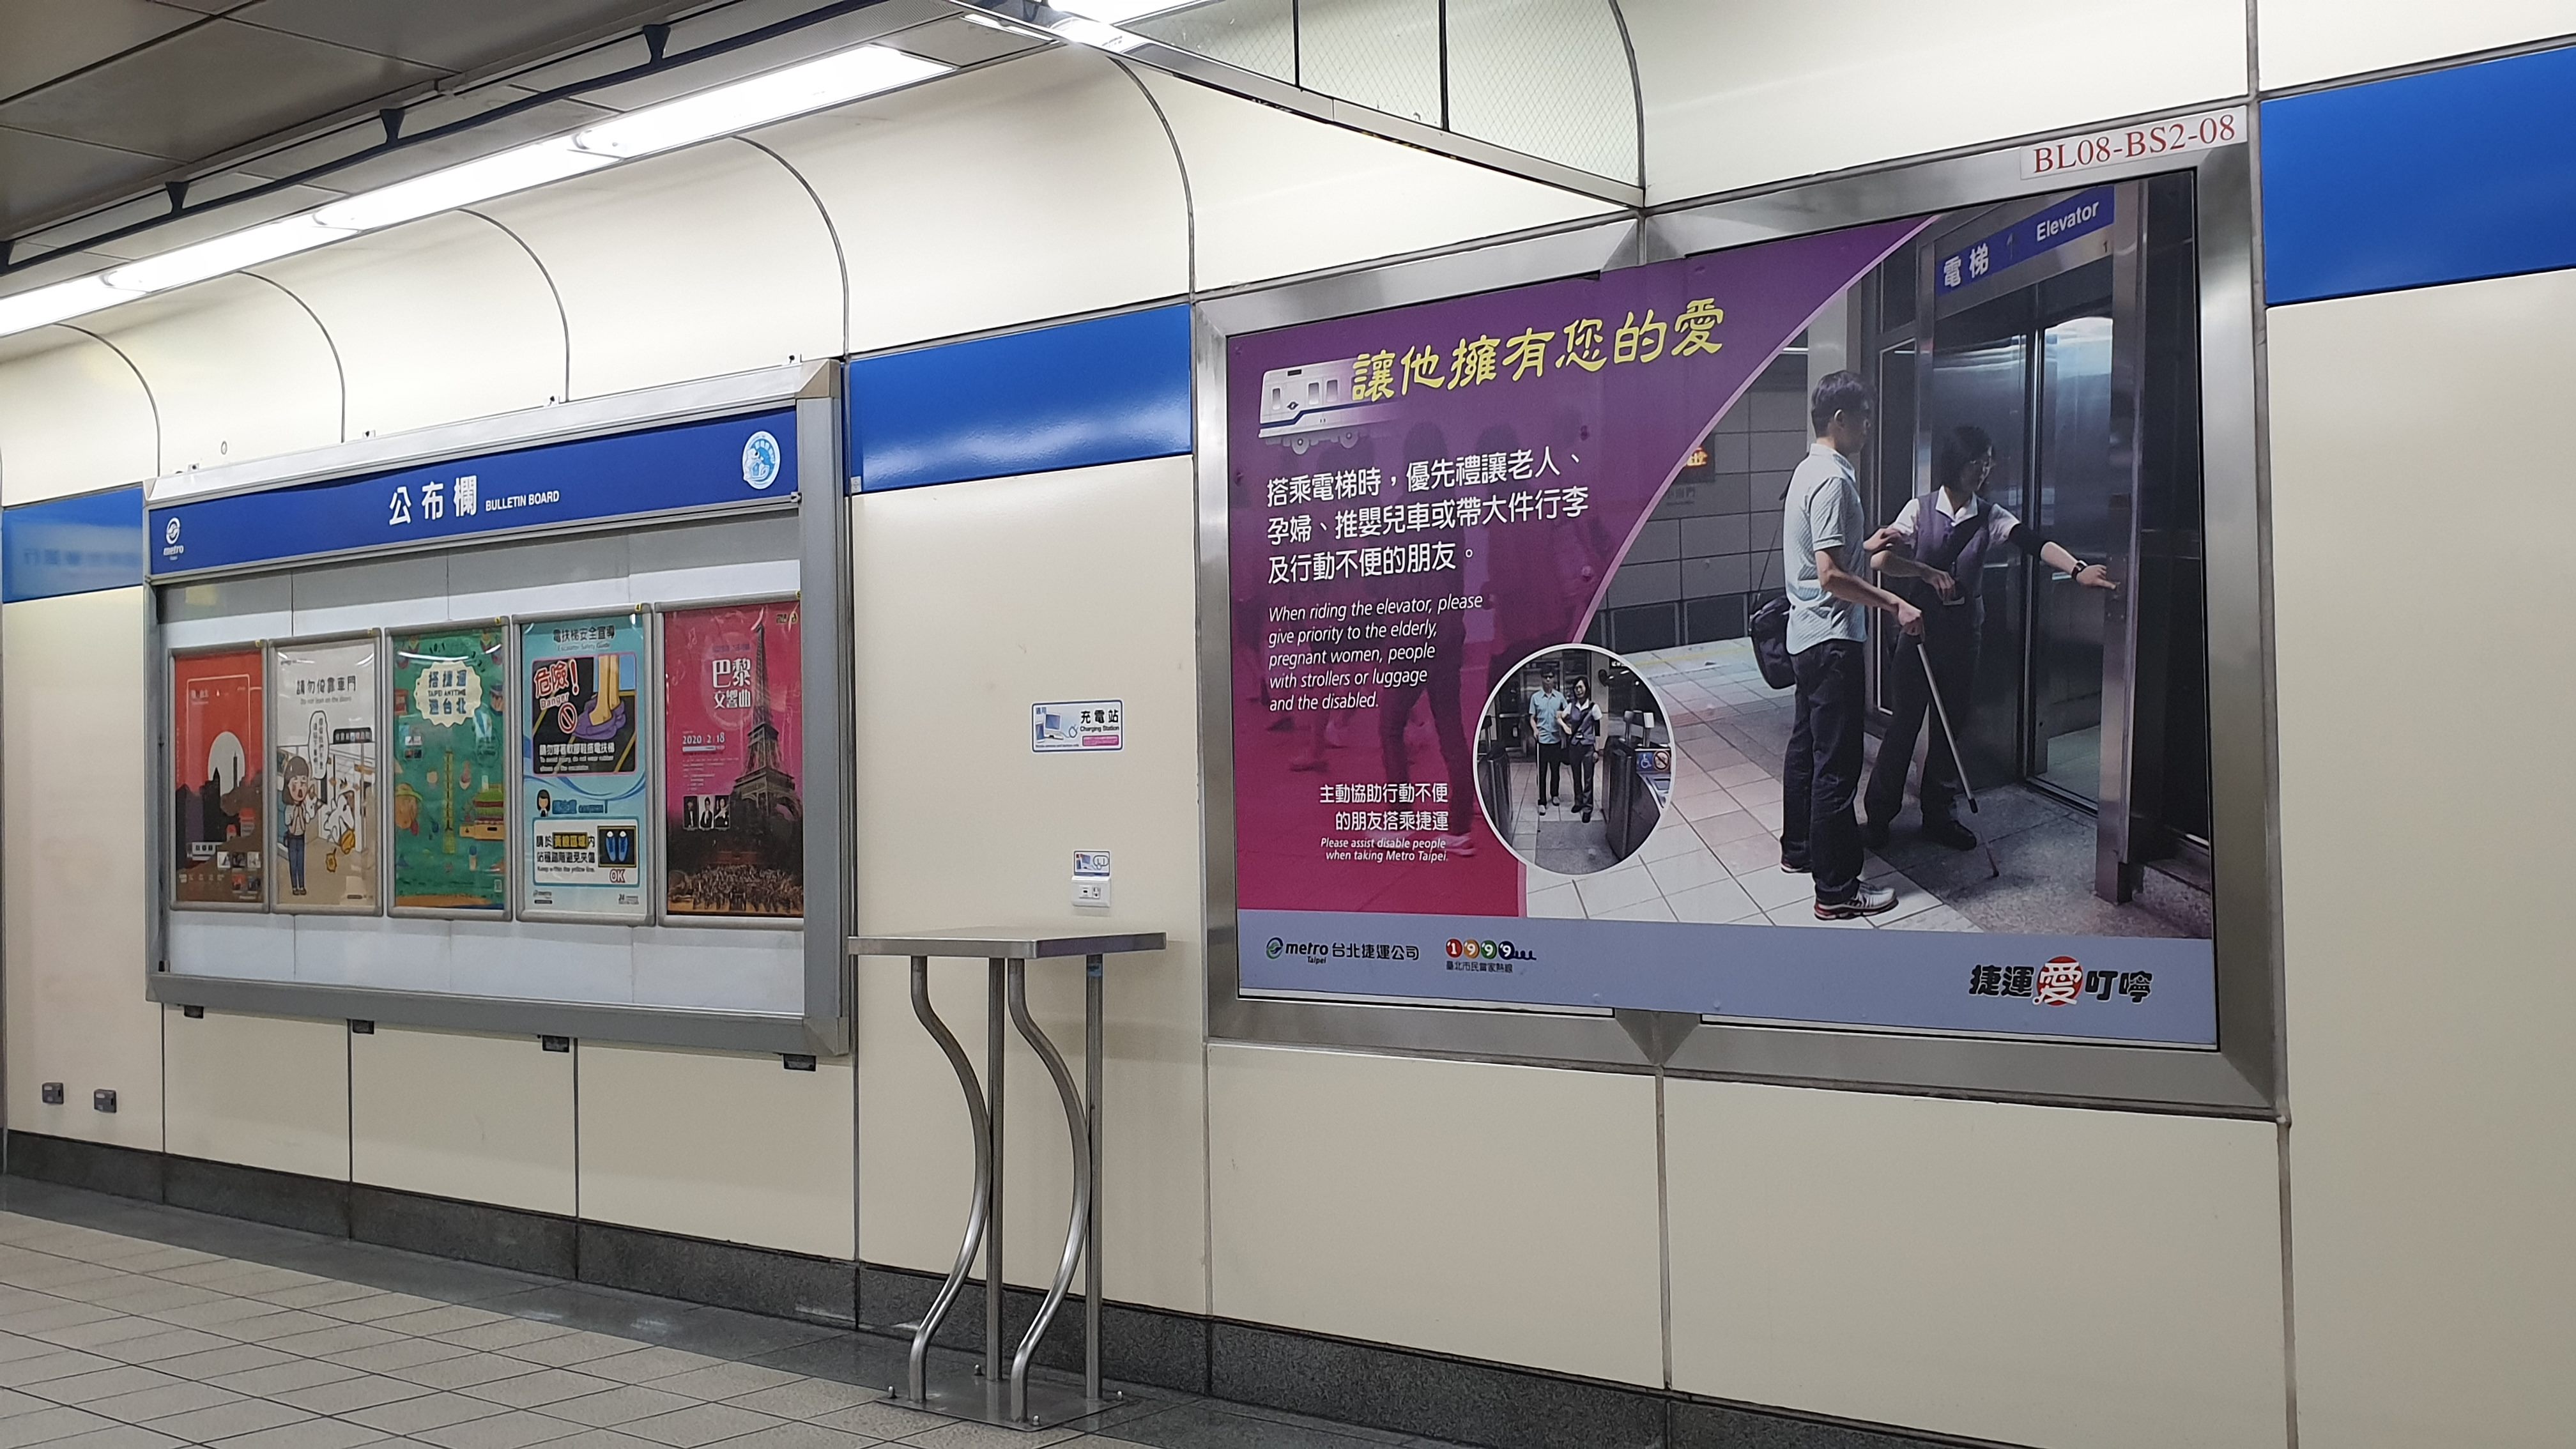 Warga dapat kembali menggunakan fasilitas charger umum di stasiun MRT. Sumber: MRT Taipei